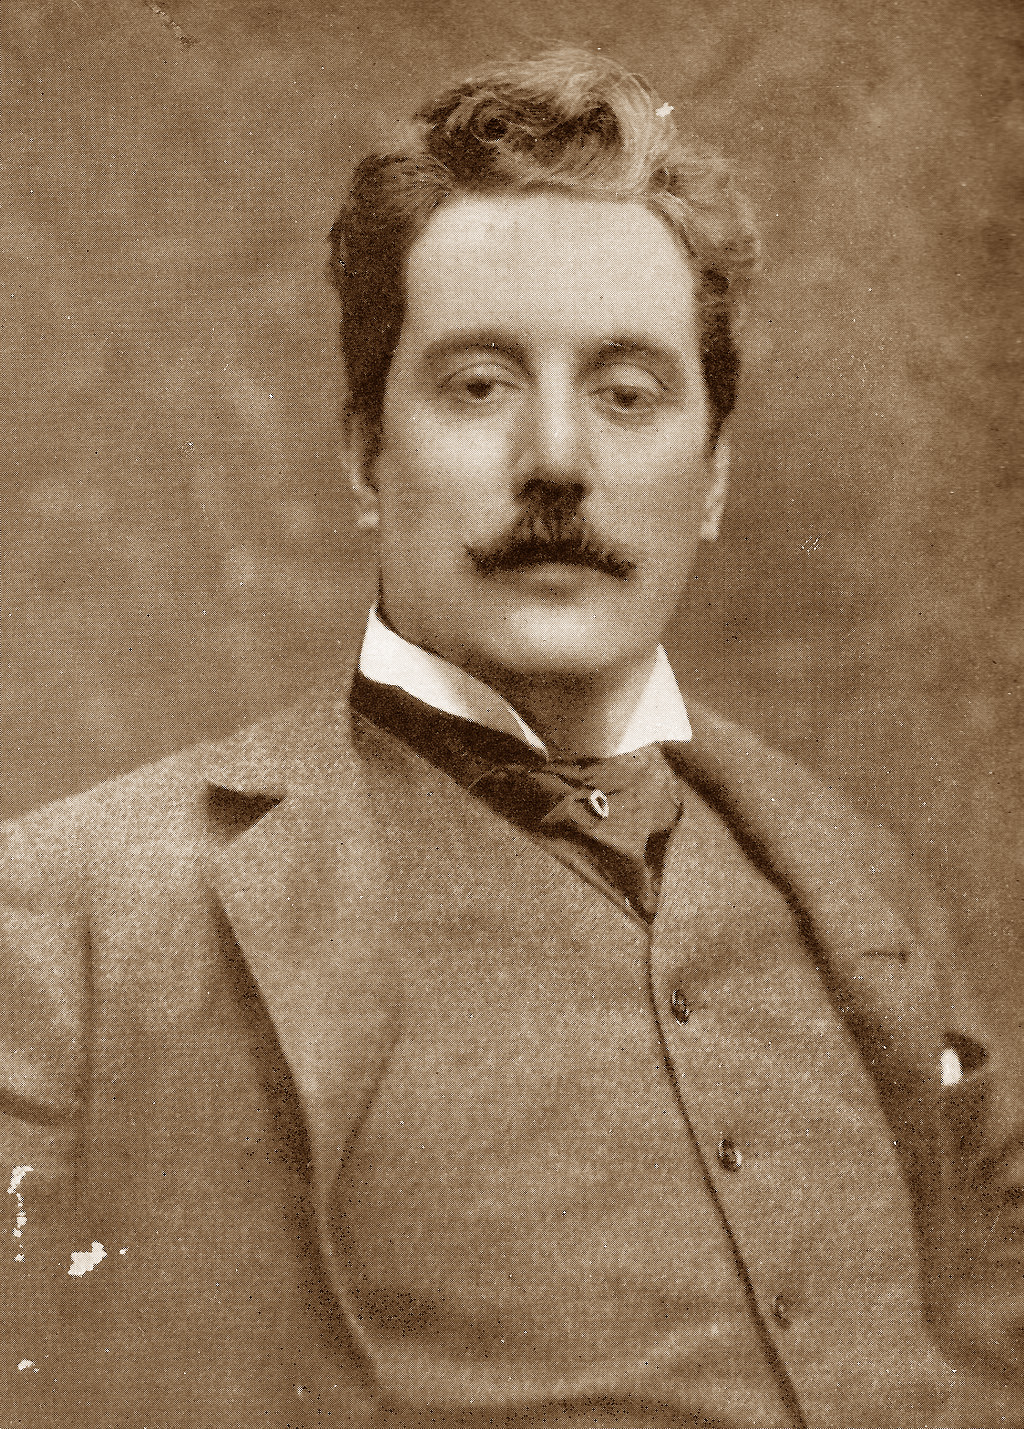 Giacomo Puccini in 1900.